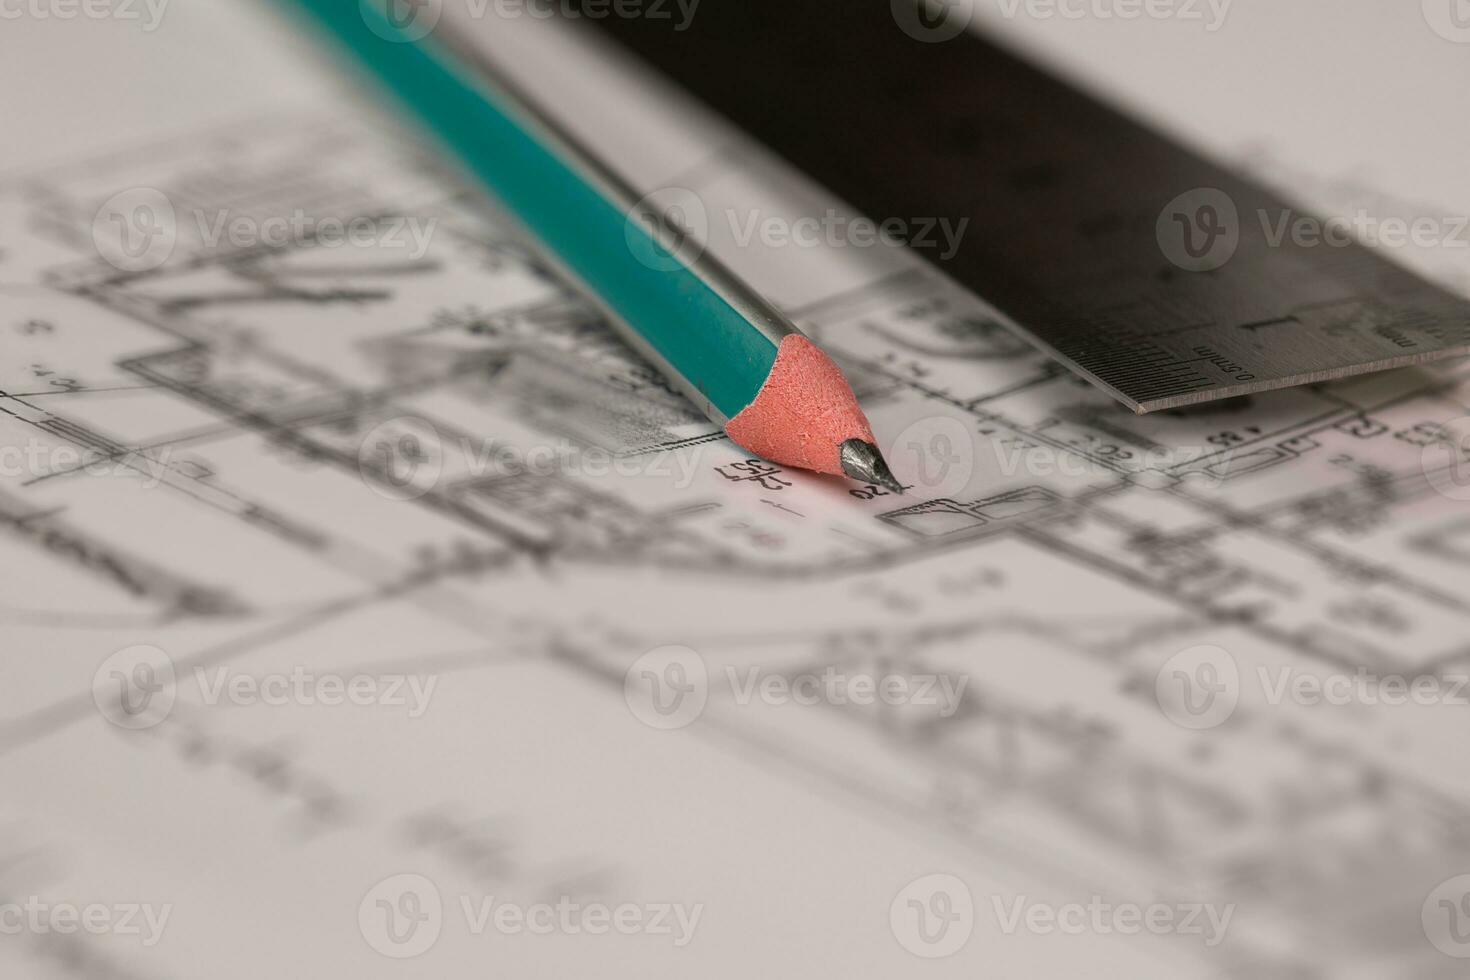 carbón lápiz y metal regla en un técnico dibujo de un departamento. foto